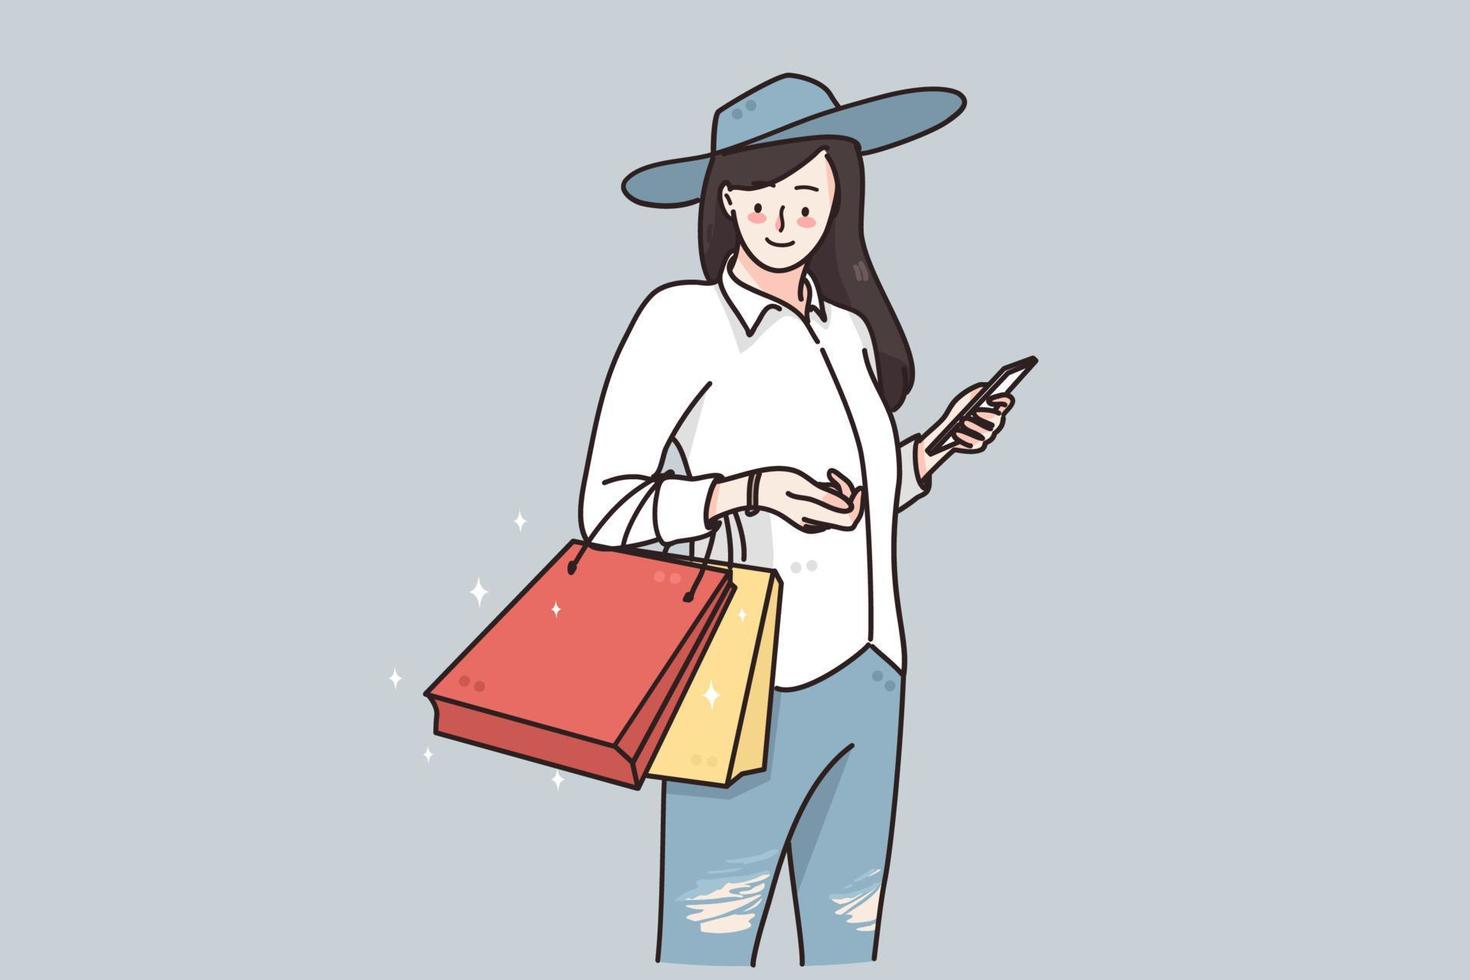 acquisti, i saldi e sconto concetto. giovane contento donna cartone animato personaggio nel cappello in piedi con shopping borse acquisti e sensazione positivo vettore illustrazione